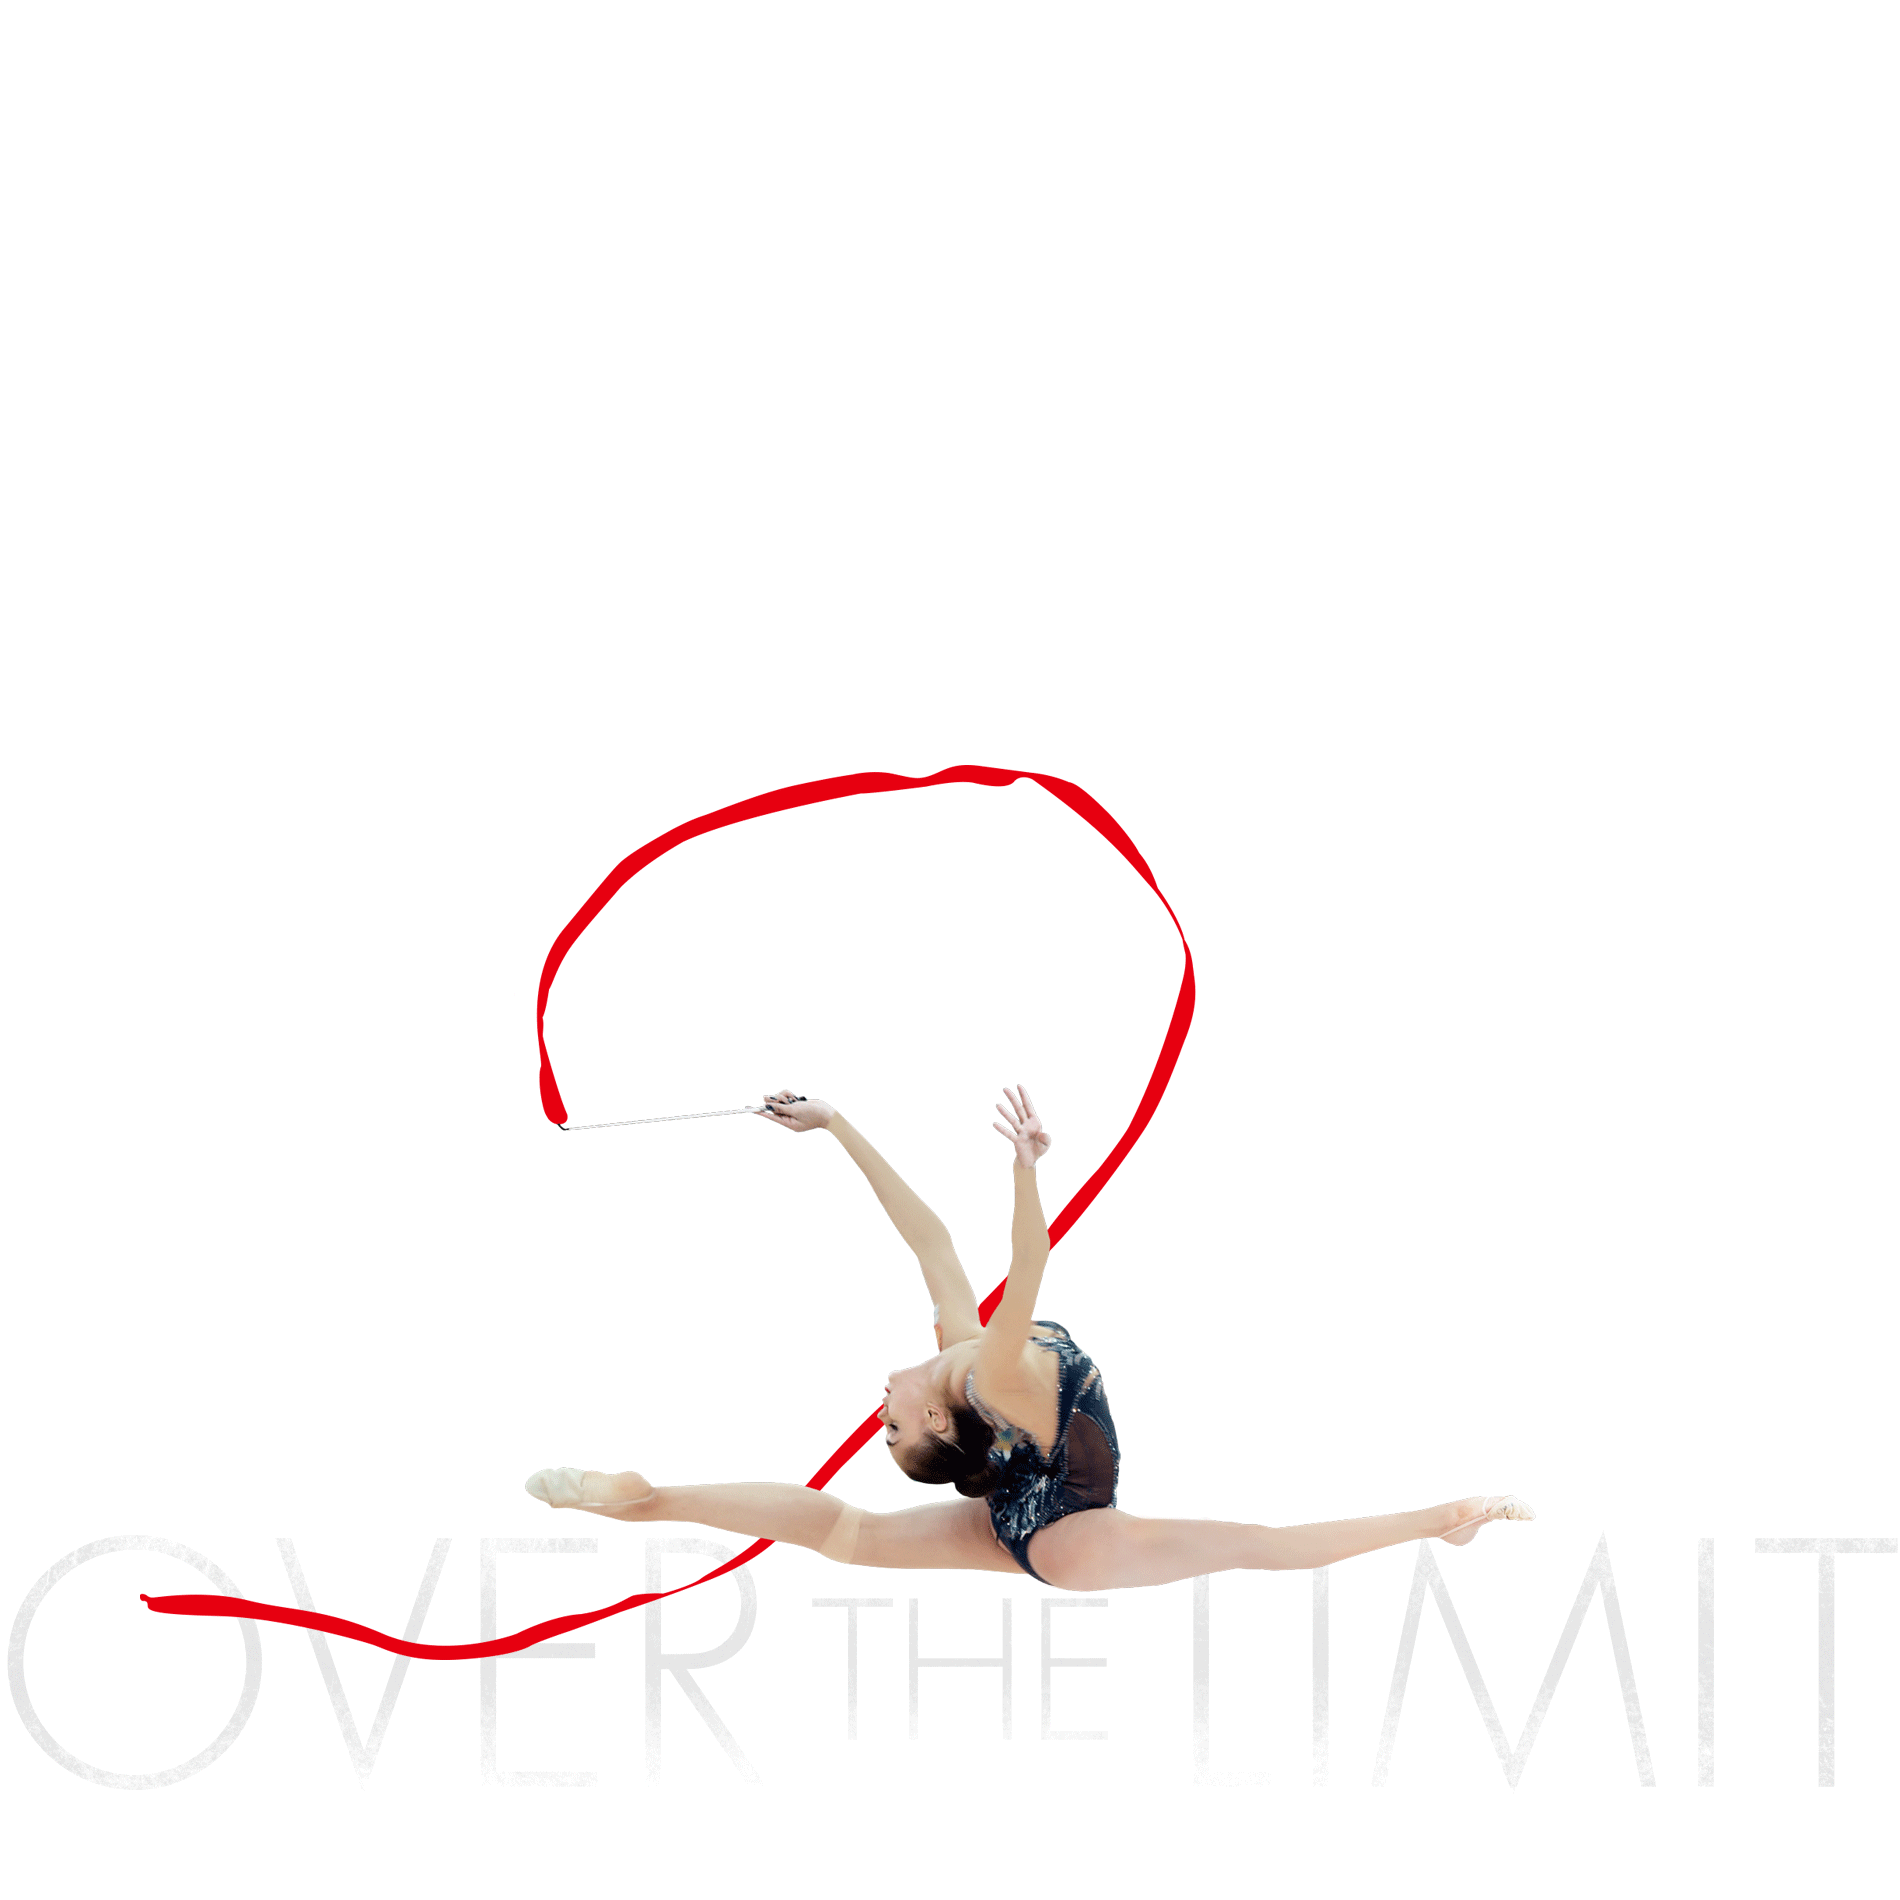 映画『オーバー・ザ・リミット 新体操の女王マムーンの軌跡』